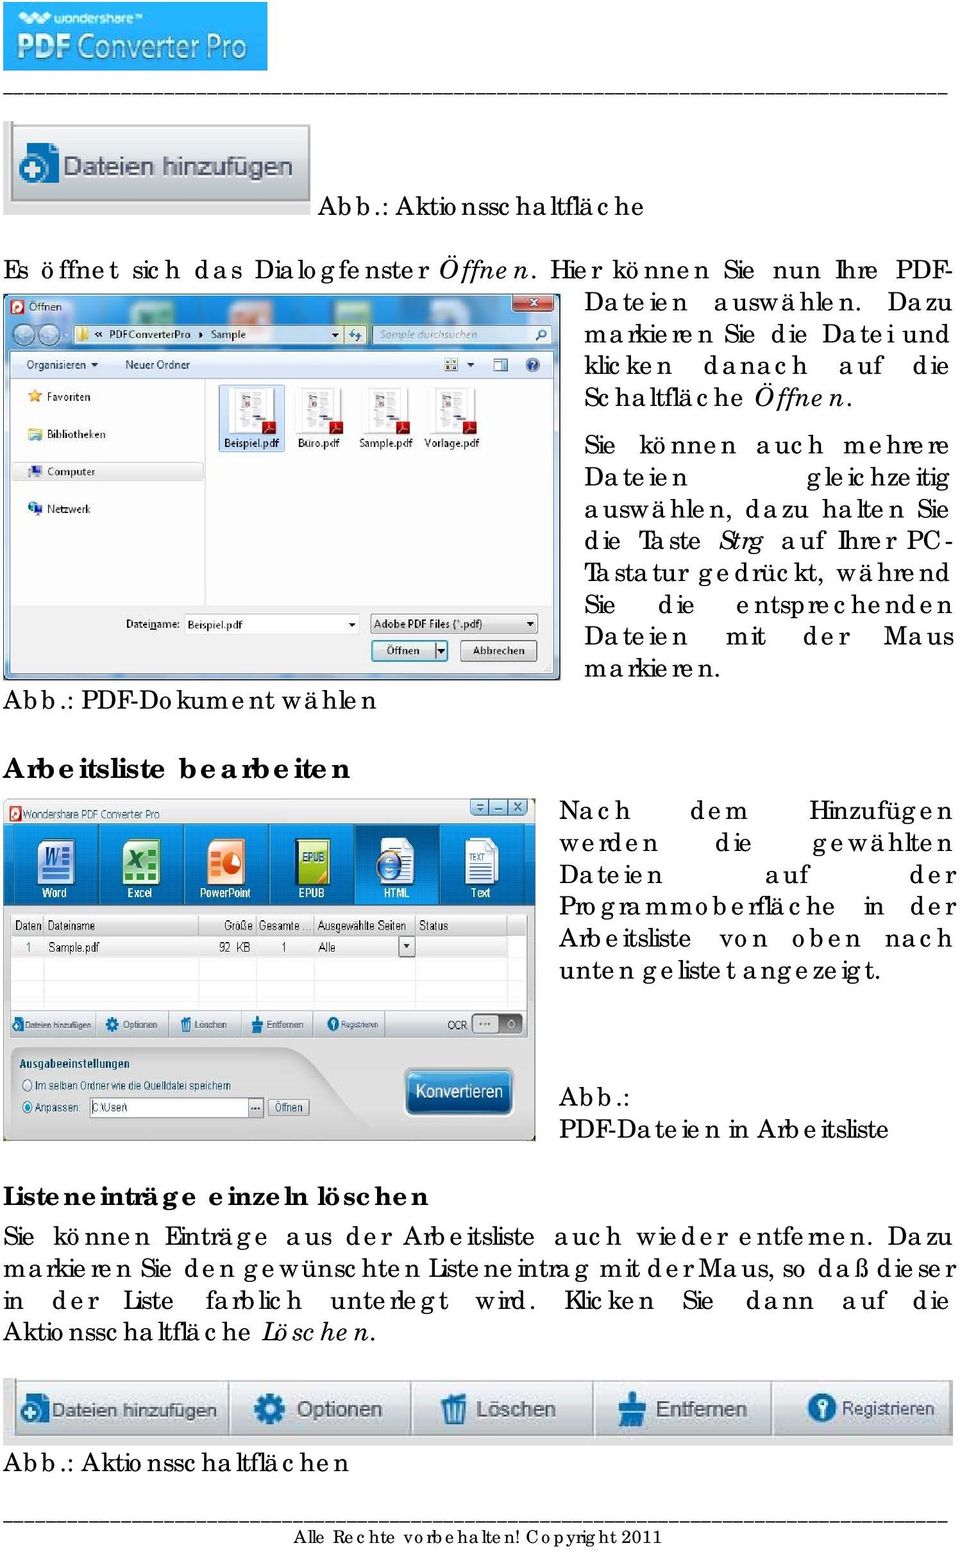 : PDF-Dokument wählen Sie können auch mehrere Dateien gleichzeitig auswählen, dazu halten Sie die Taste Strg auf Ihrer PC- Tastatur gedrückt, während Sie die entsprechenden Dateien mit der Maus